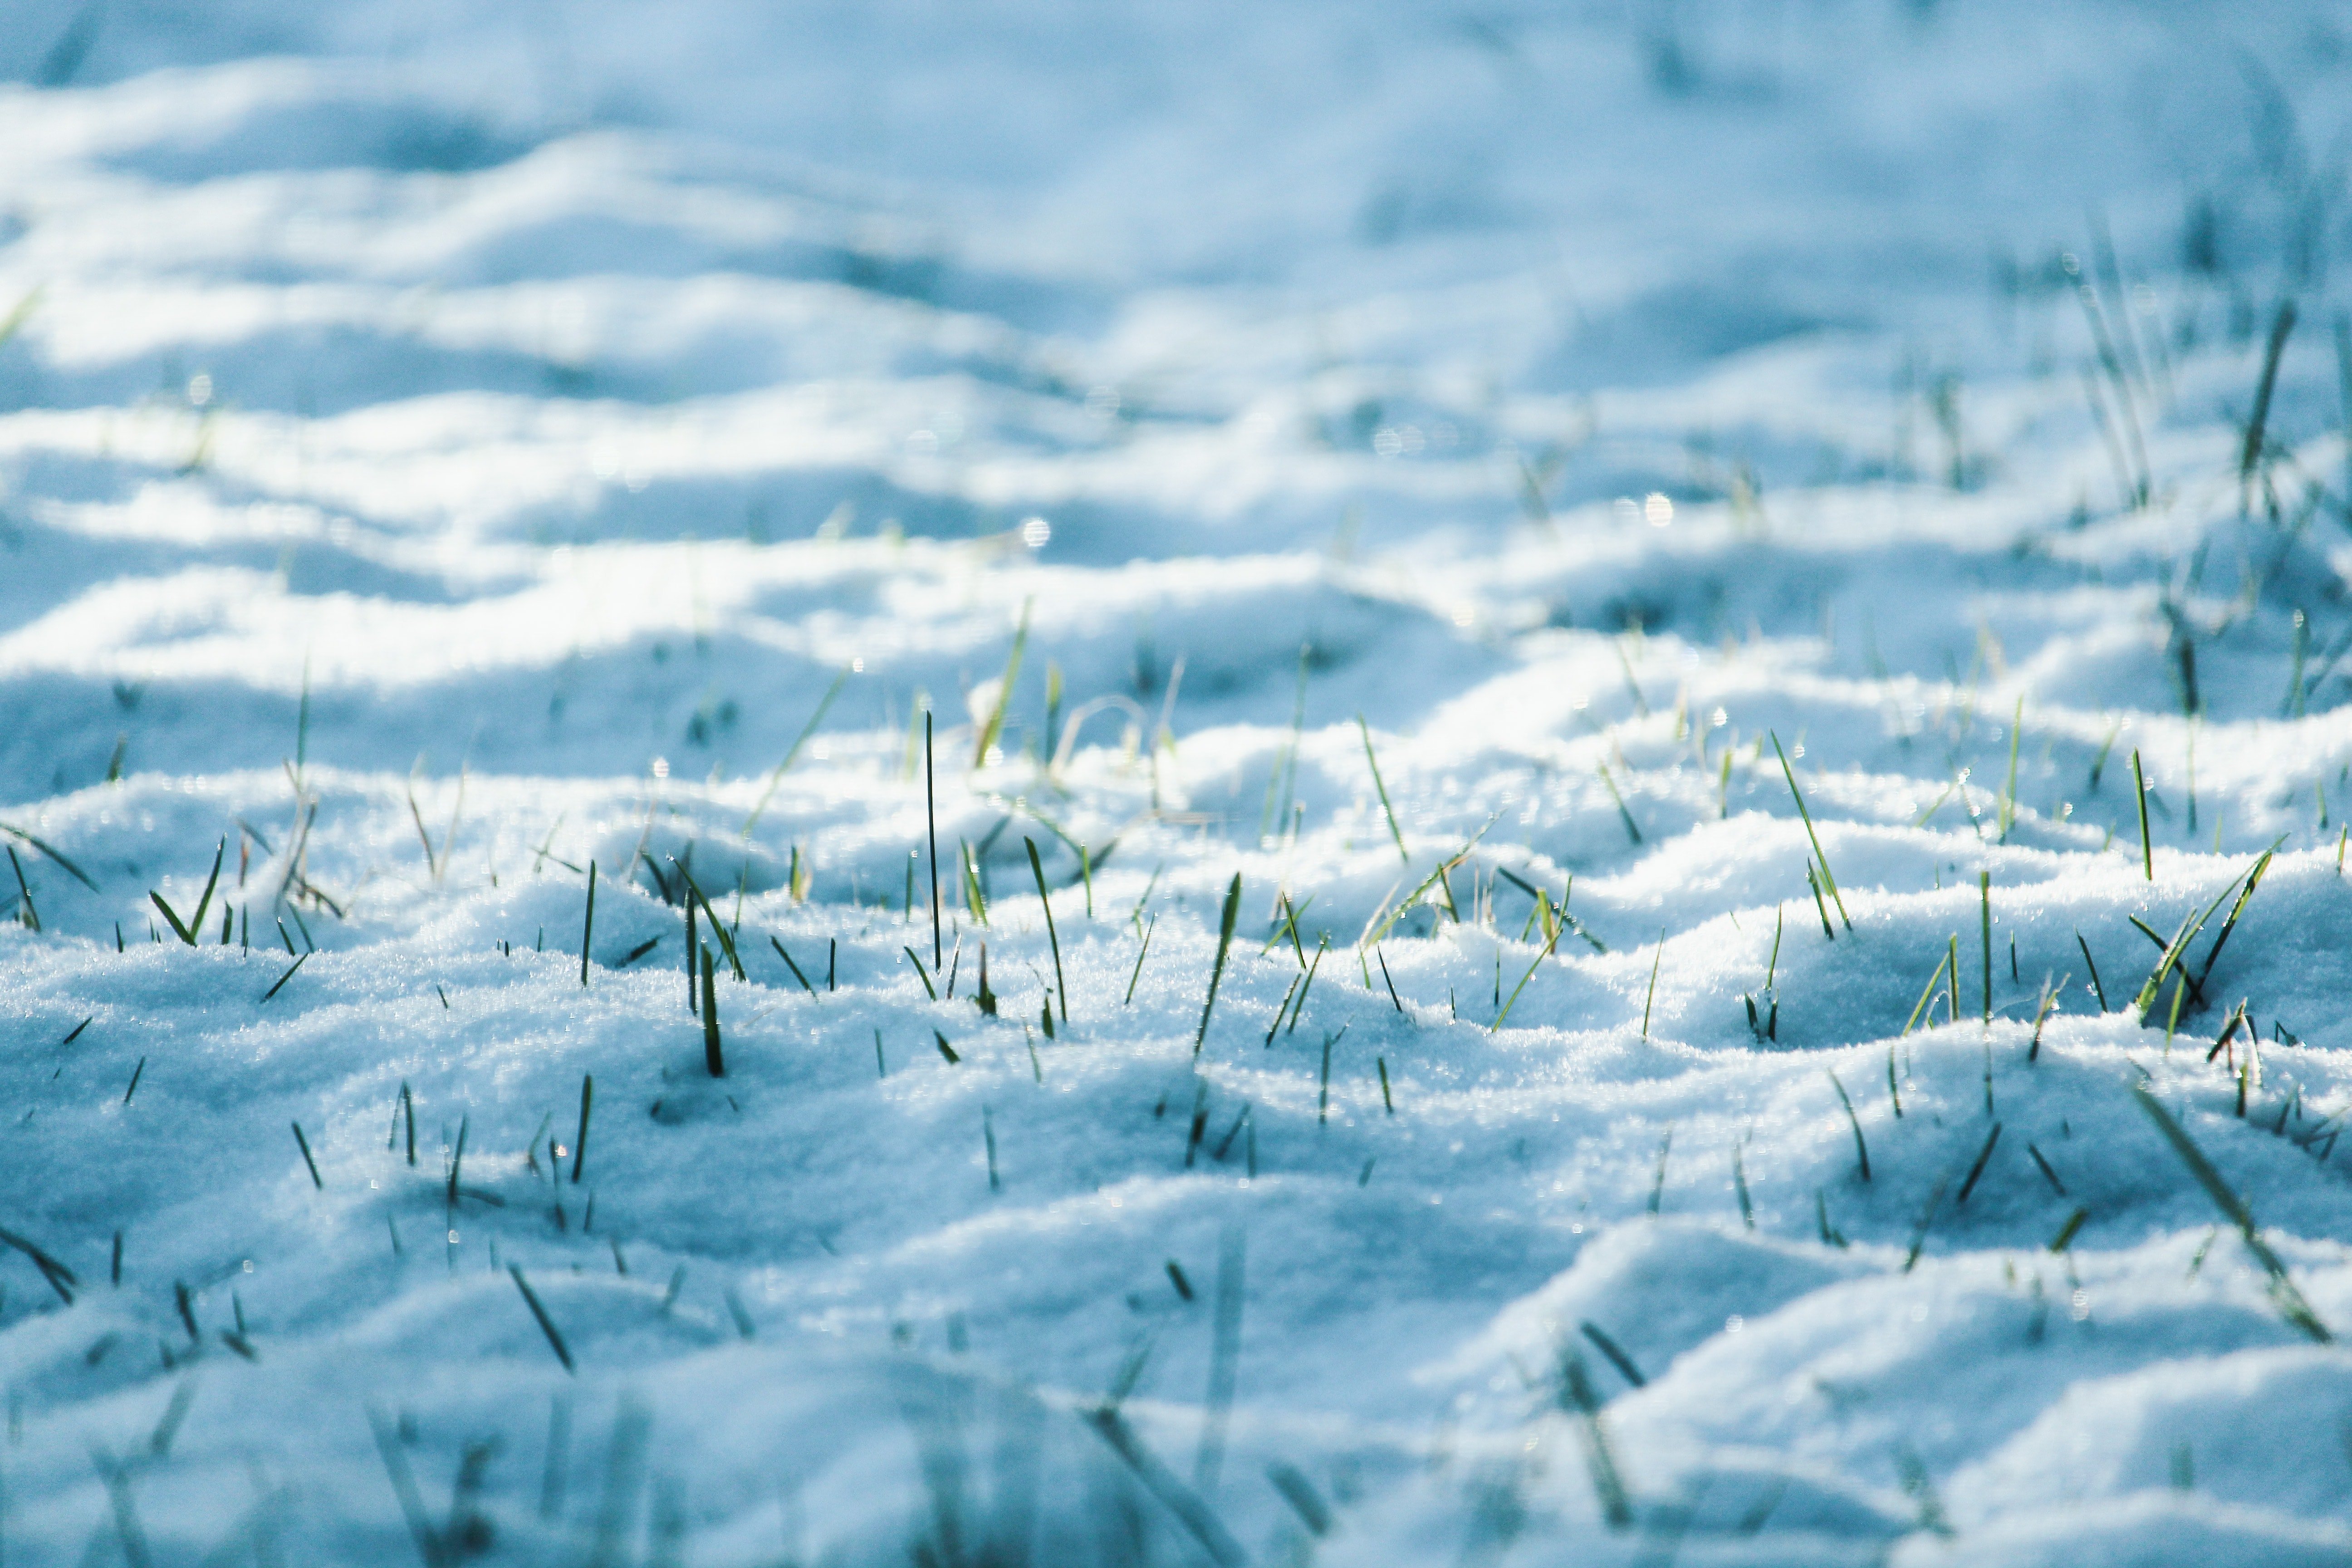 Трава под снегом